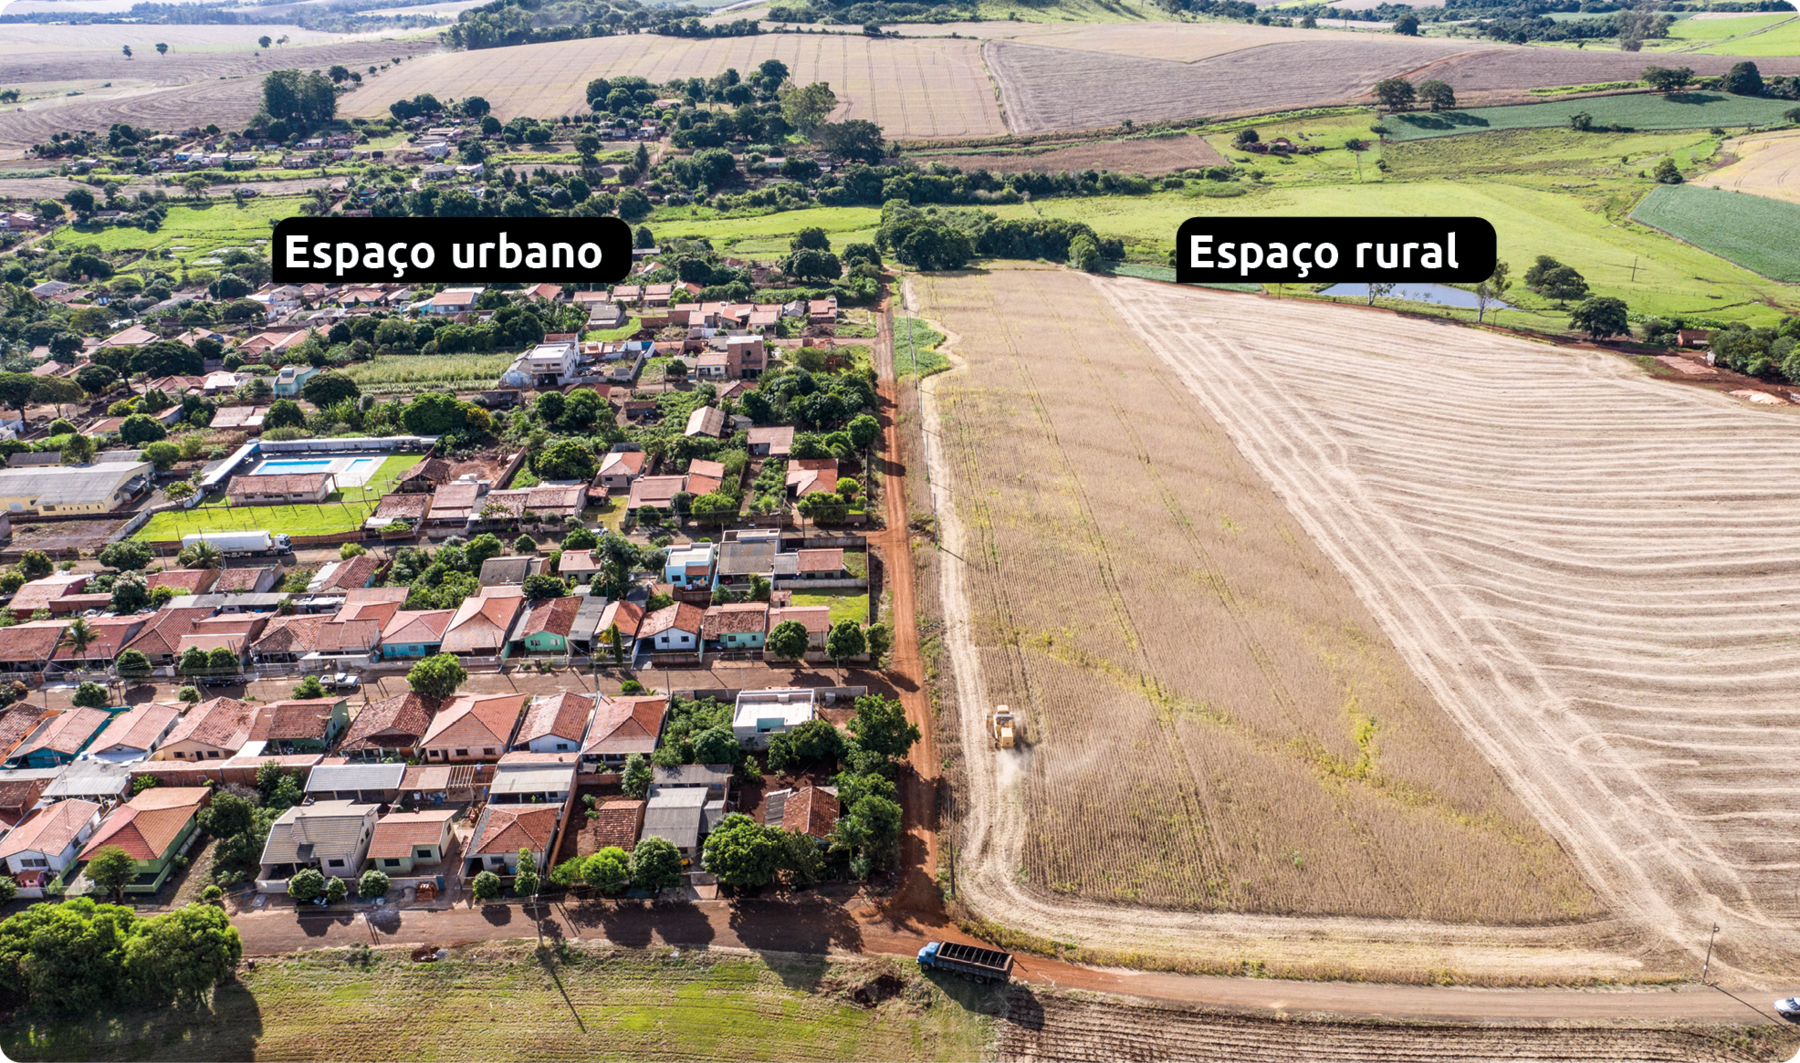 Fotografia. Vista aérea. À esquerda, Espaço Urbano, com diversas casas entre vias e árvores. À direita, Espaço rural com uma vasta área de plantio.